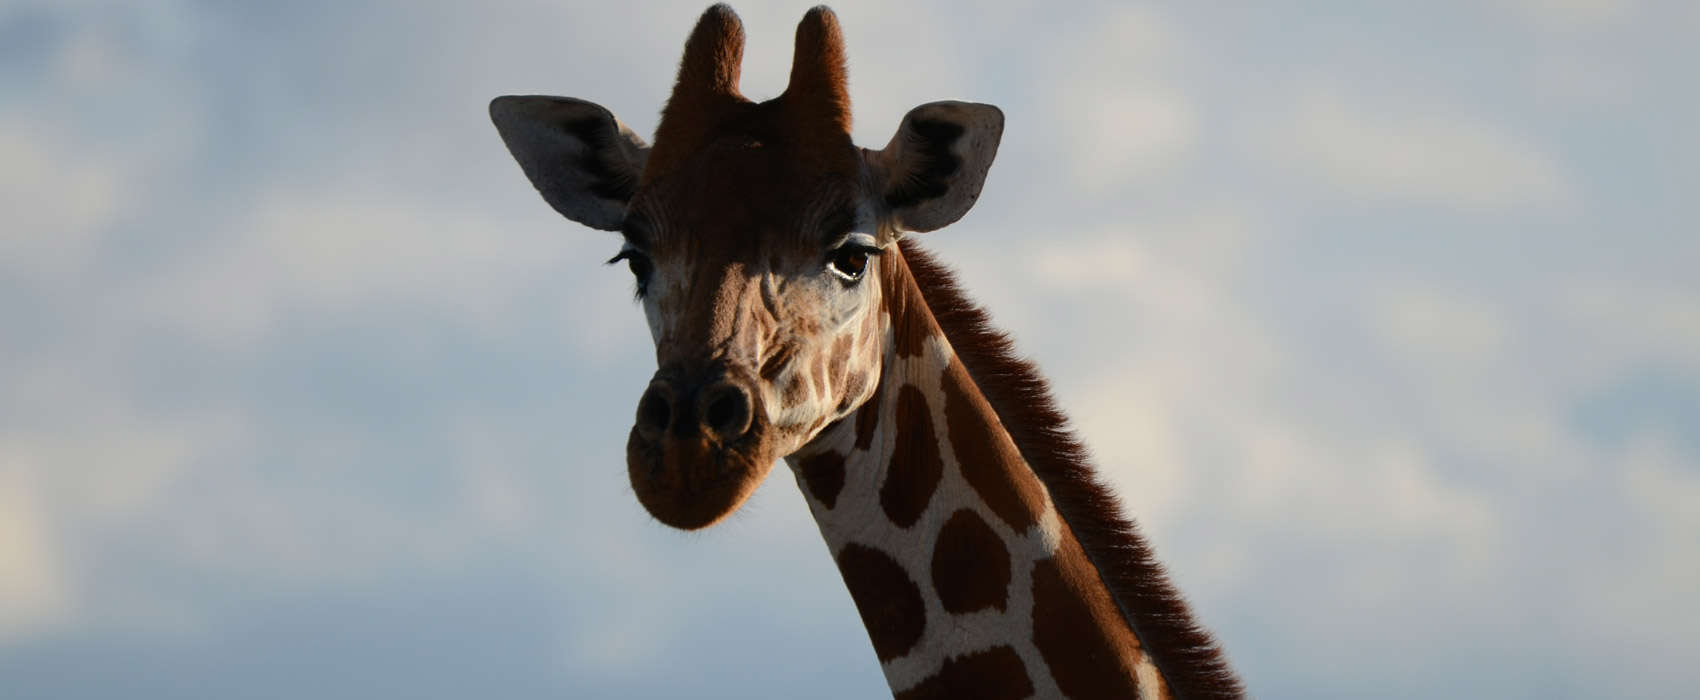 African Masai Mara Safari giraffe